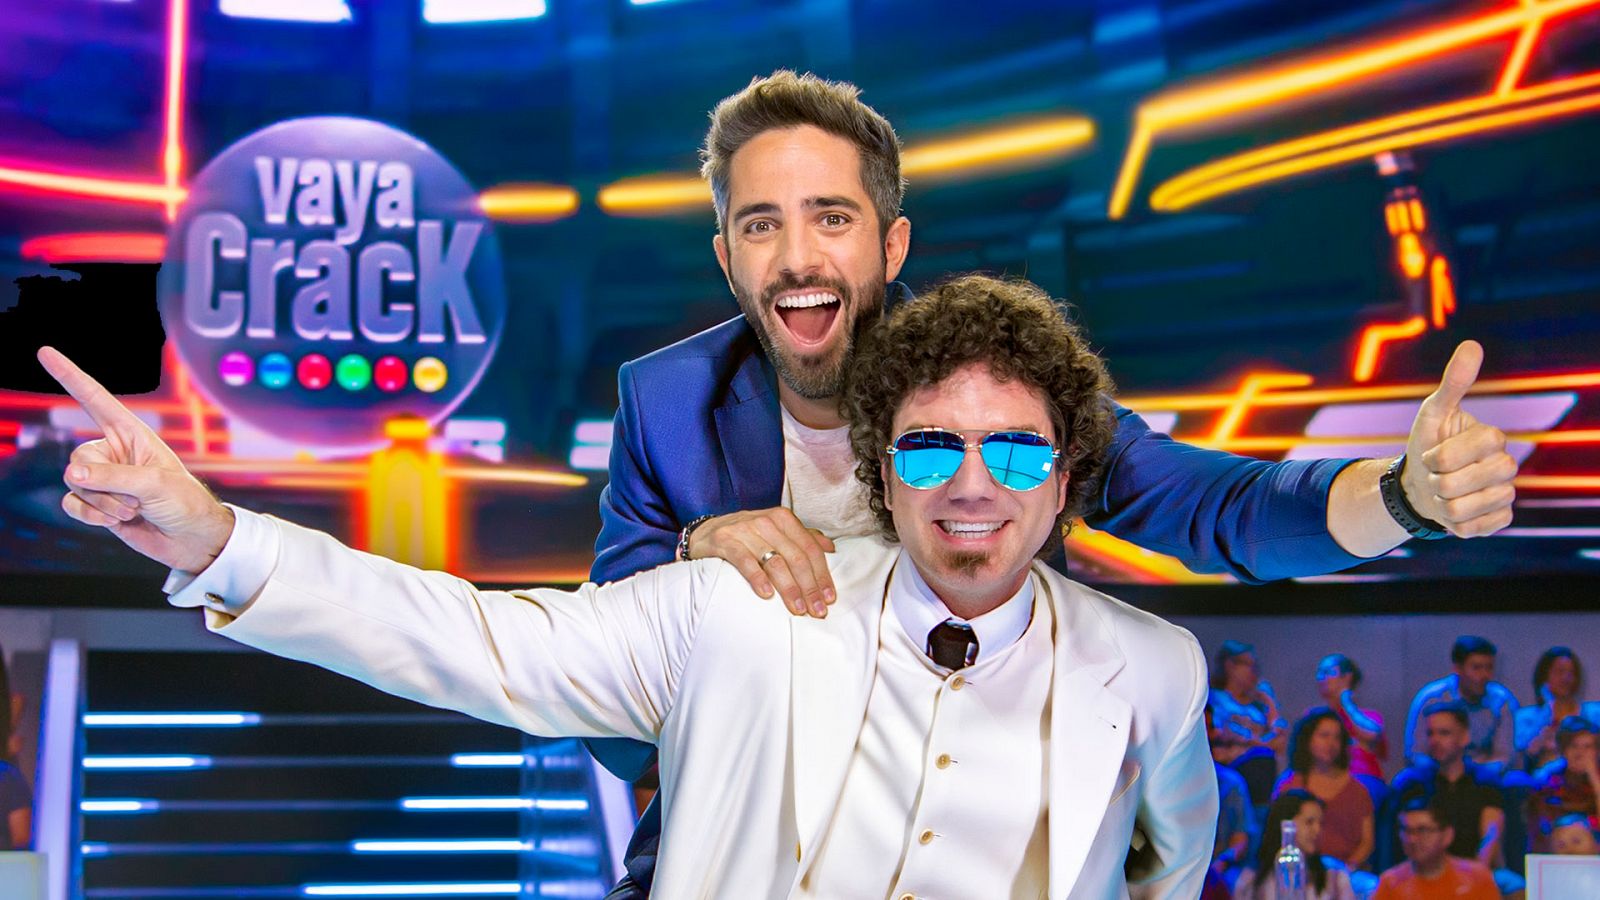 Vaya Crack - Así es 'Vaya Crack', el concurso de Roberto Leal que llega a TVE este sábado 14 de septiembre